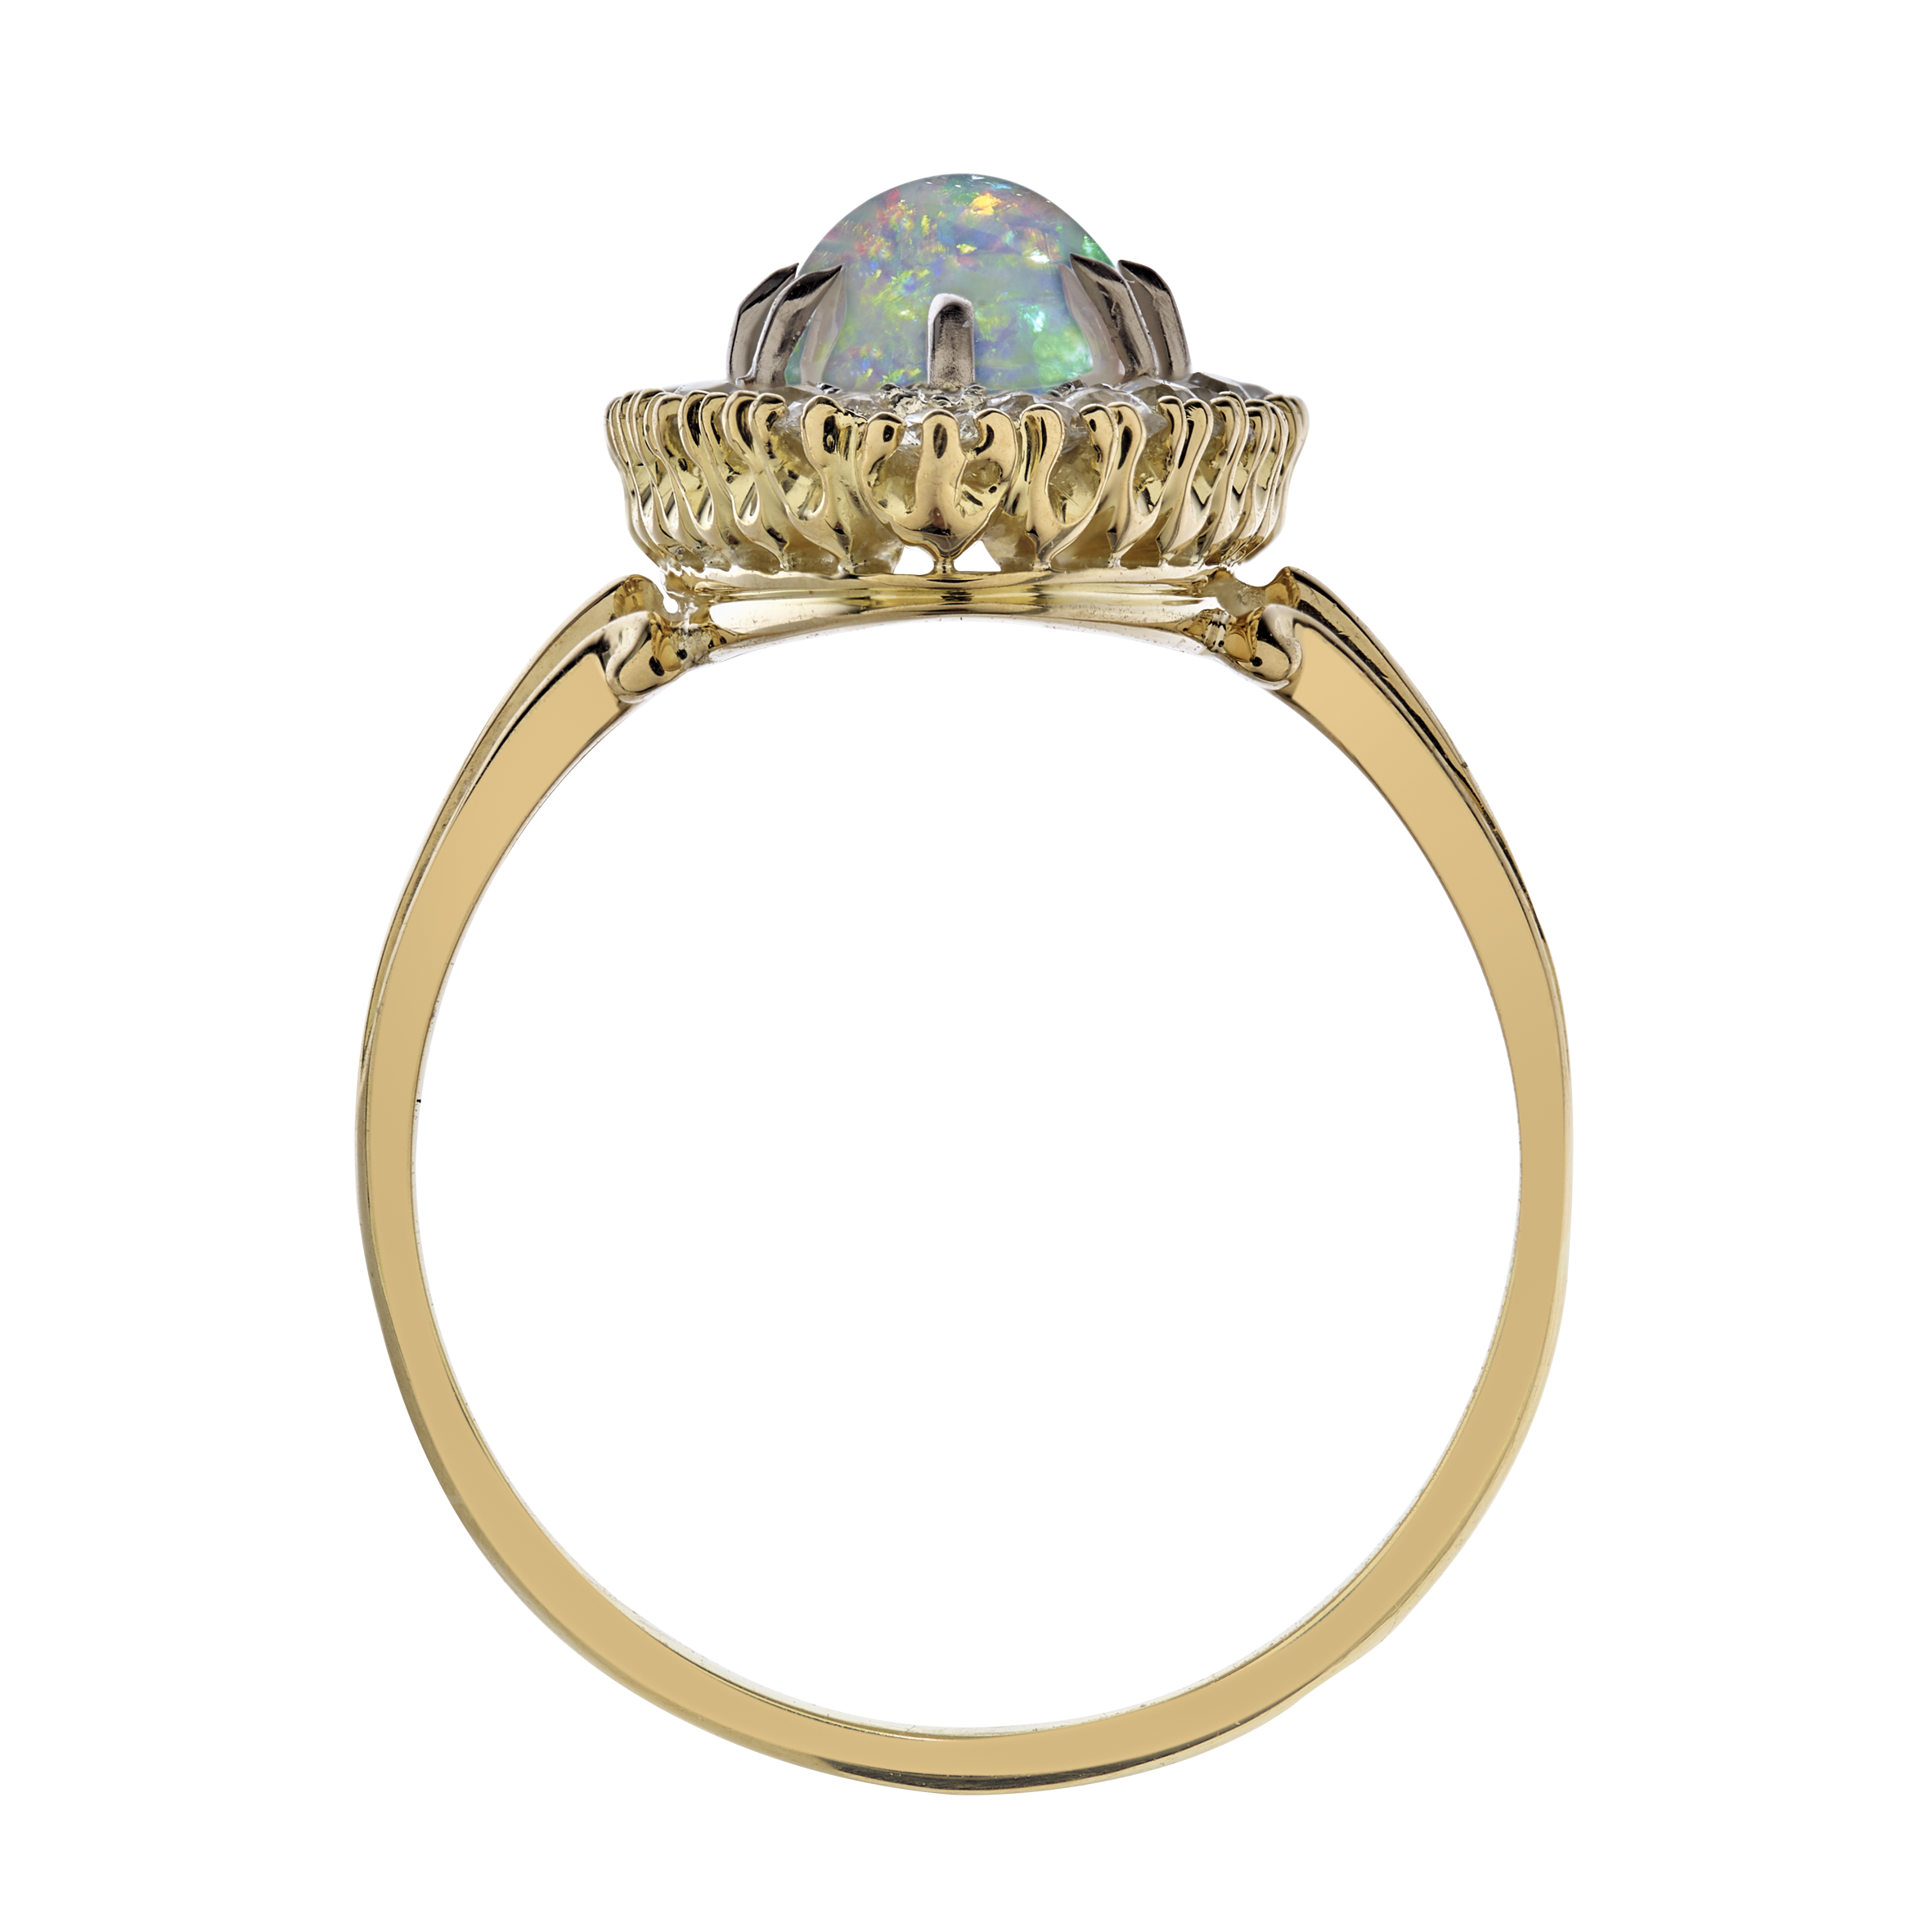 Marquise opale et diamants fin XIXe Gerphagnon